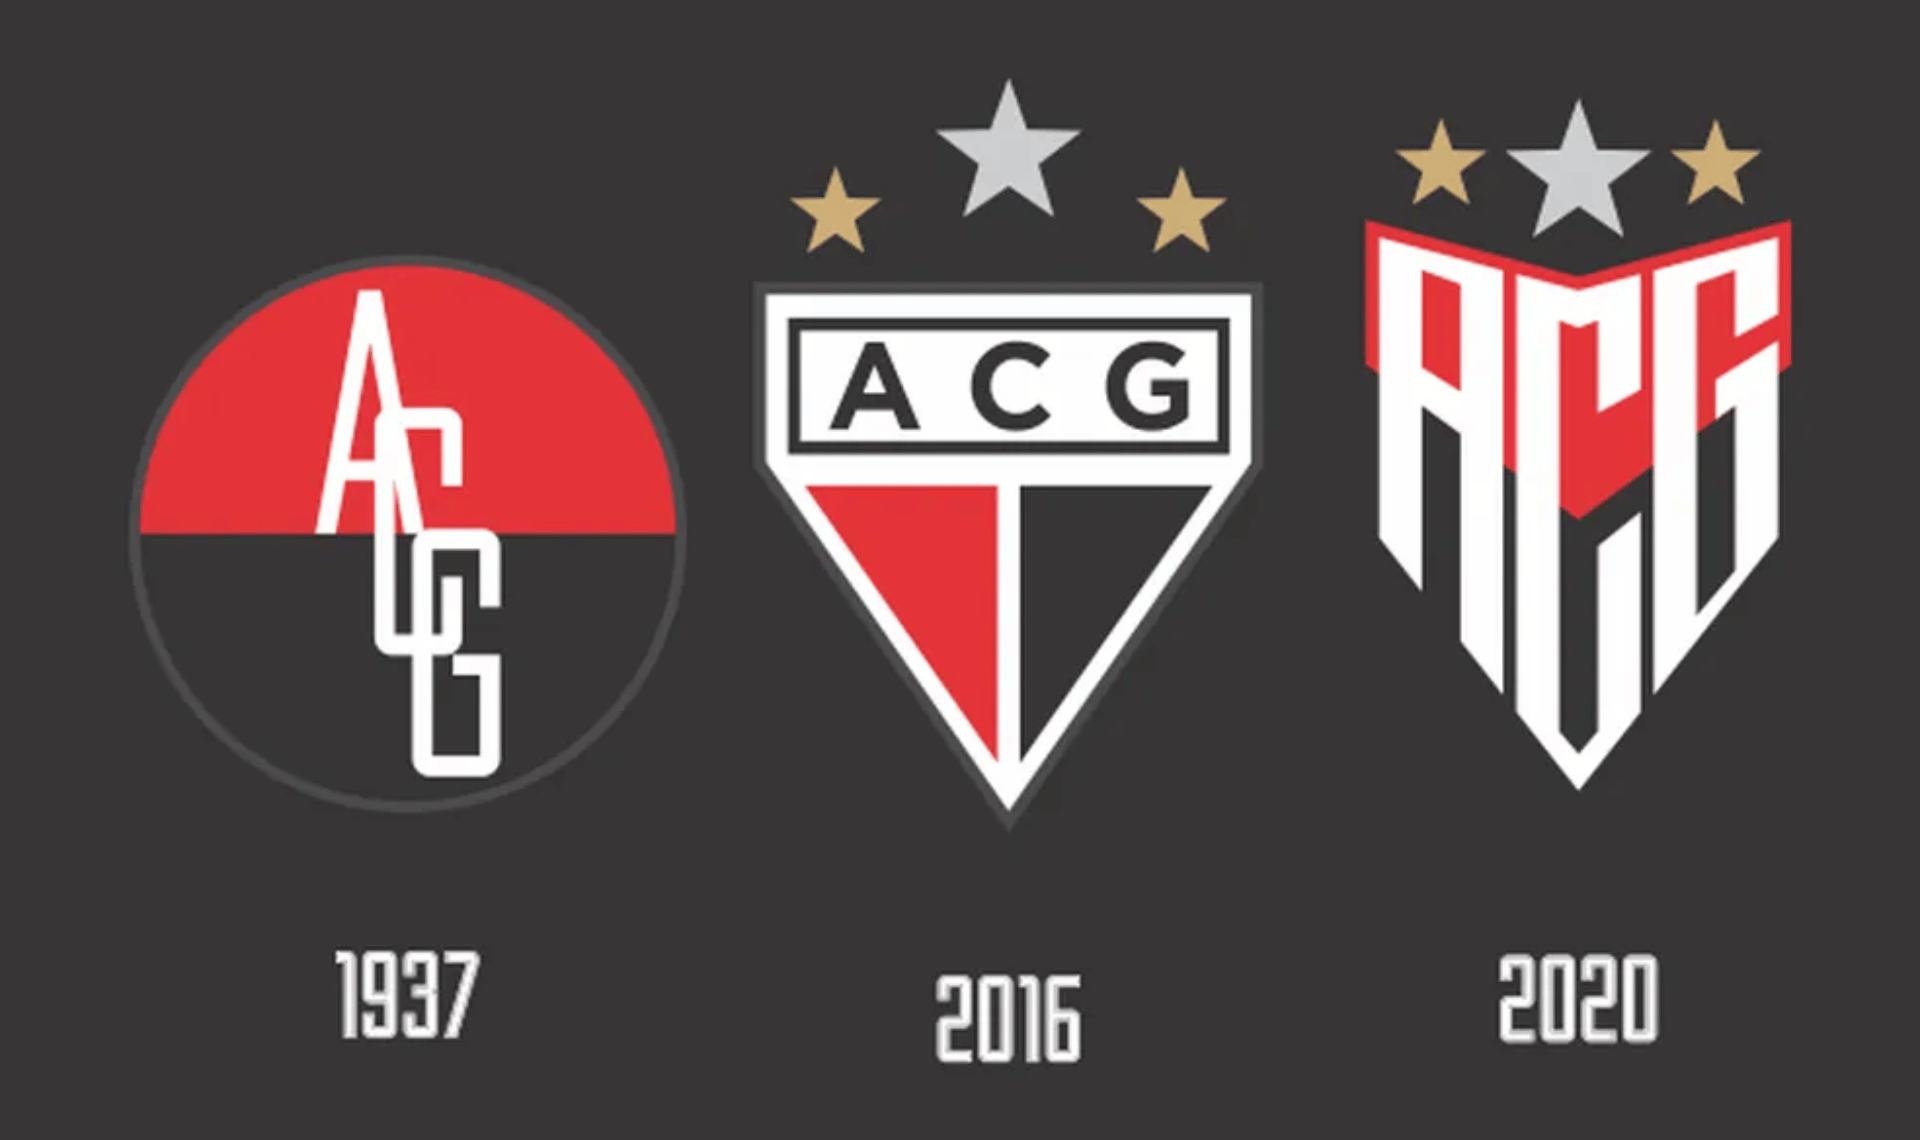 Atlético Goianiense escudo